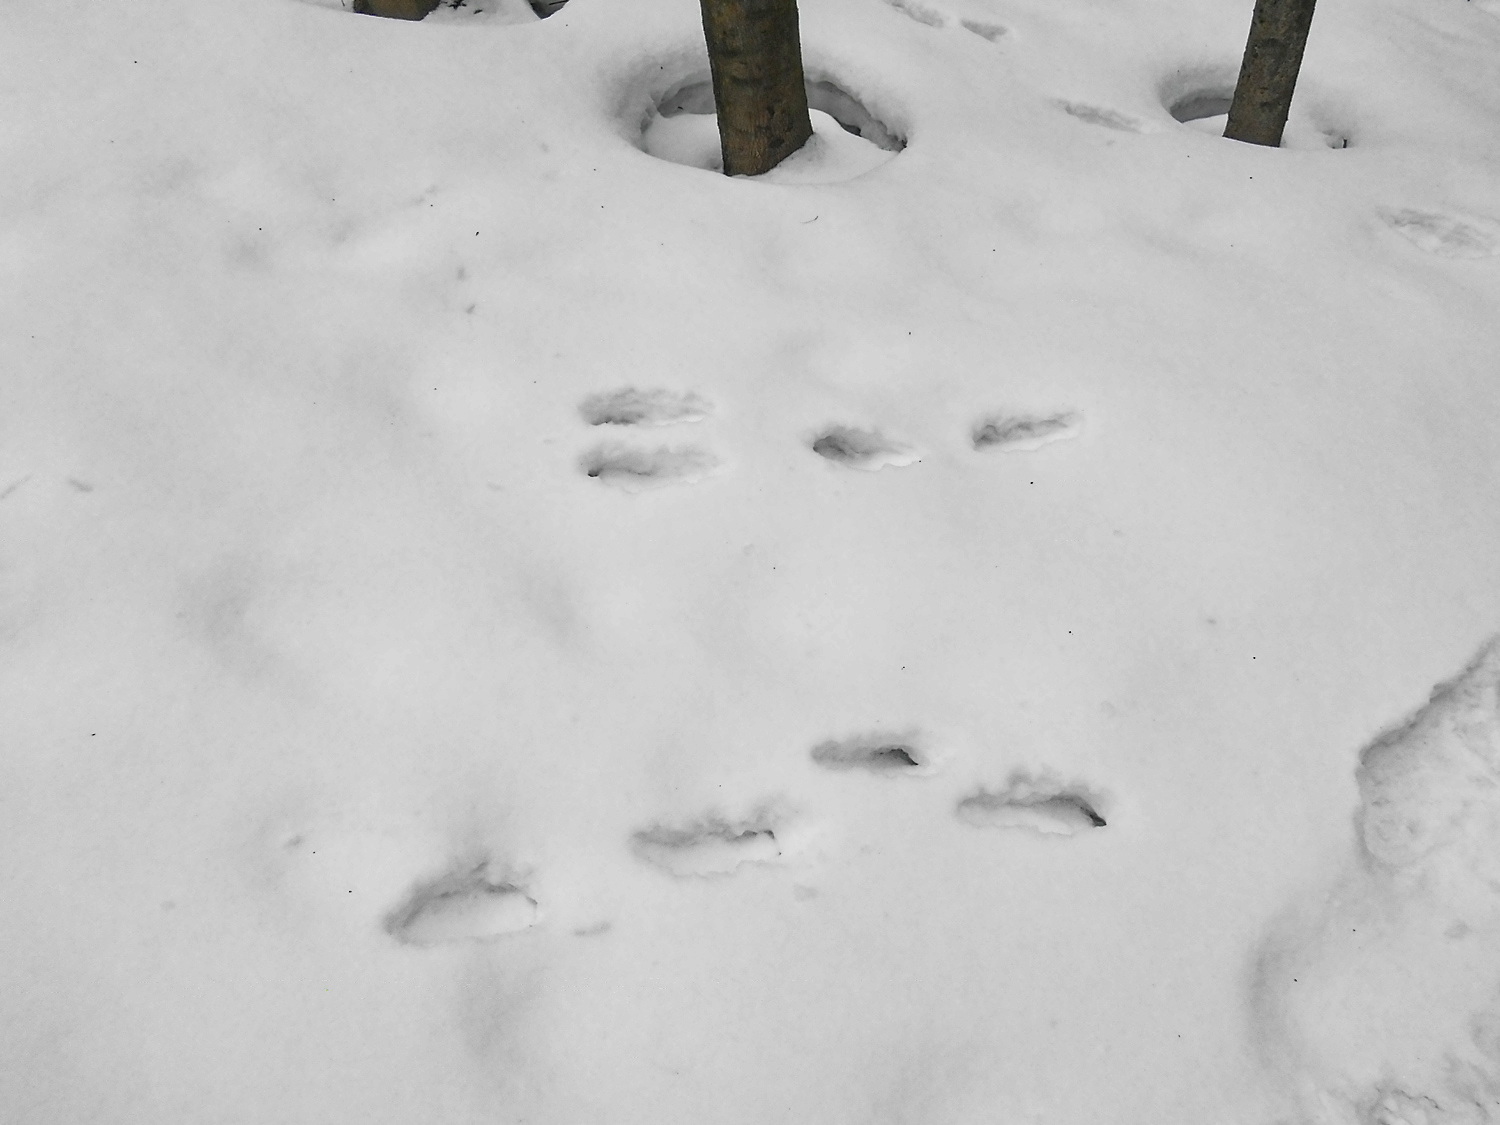 След зайца на снегу 5. Следы зайца беляка. Заячьи следы. Заячьи следы заворачивали. Следы зайца Ленинградской области.